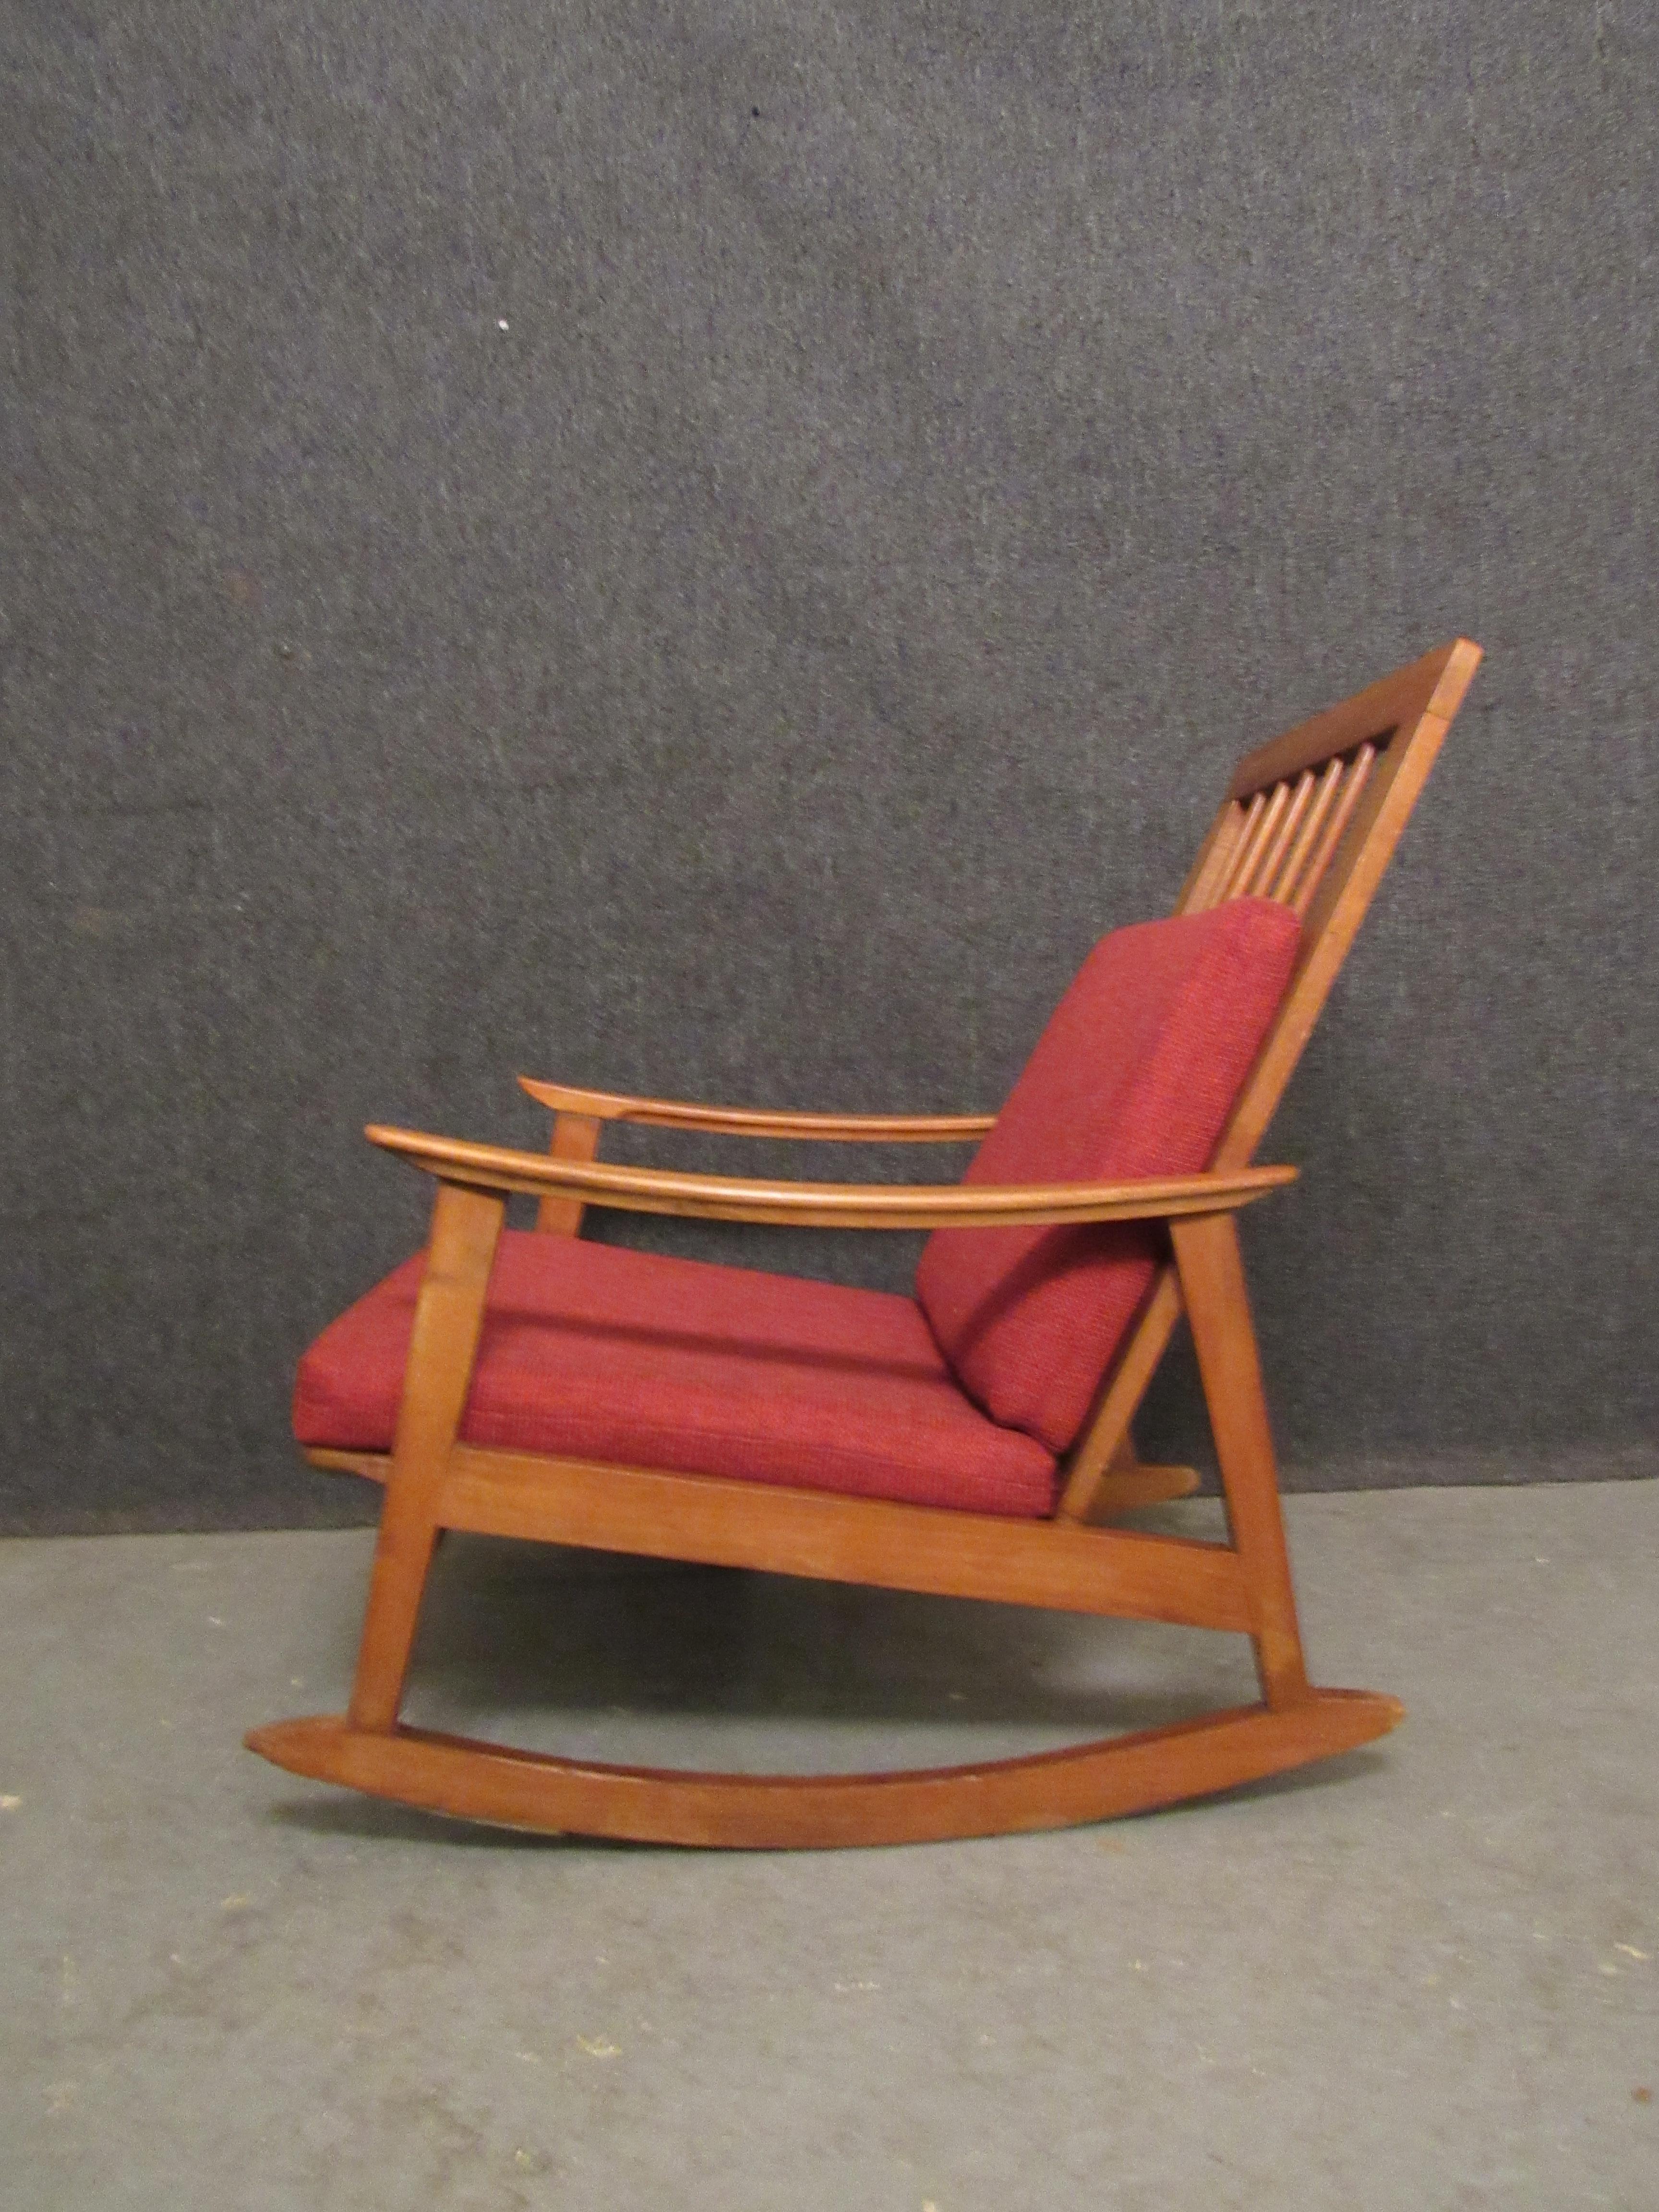 Détendez-vous grâce au confort vintage de ce fauteuil à bascule en chêne de style moderne du milieu du siècle. Les bras et les pieds inclinés donnent une touche scandinave classique à tout espace. Un haut dossier en fuseau émerge de derrière la